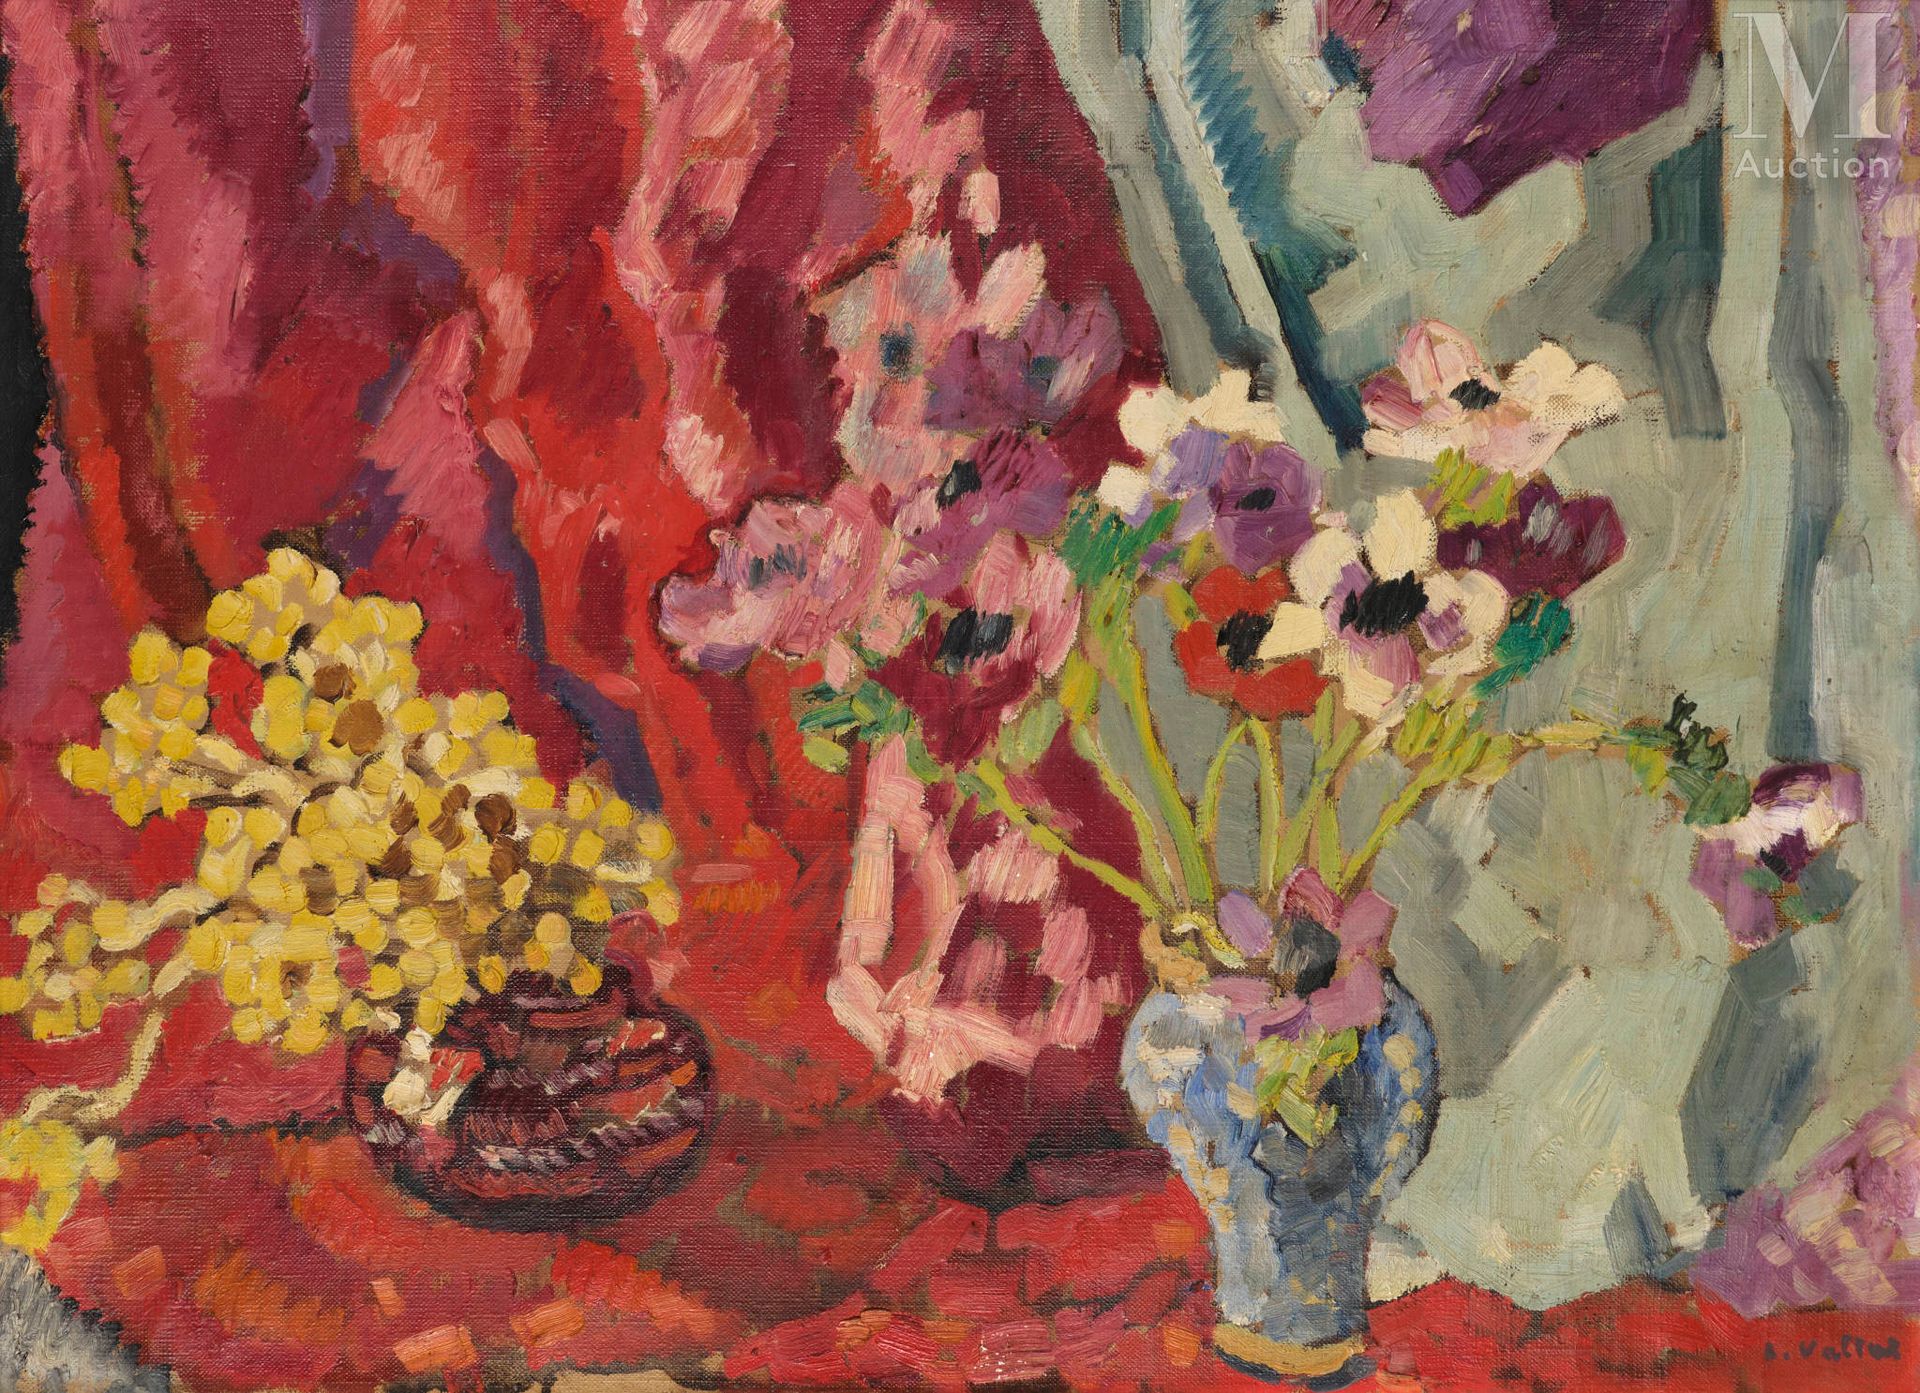 Louis VALTAT (Dieppe 1869 - Paris 1952) Vase d’anémones et bouquet jaune, 1940

&hellip;